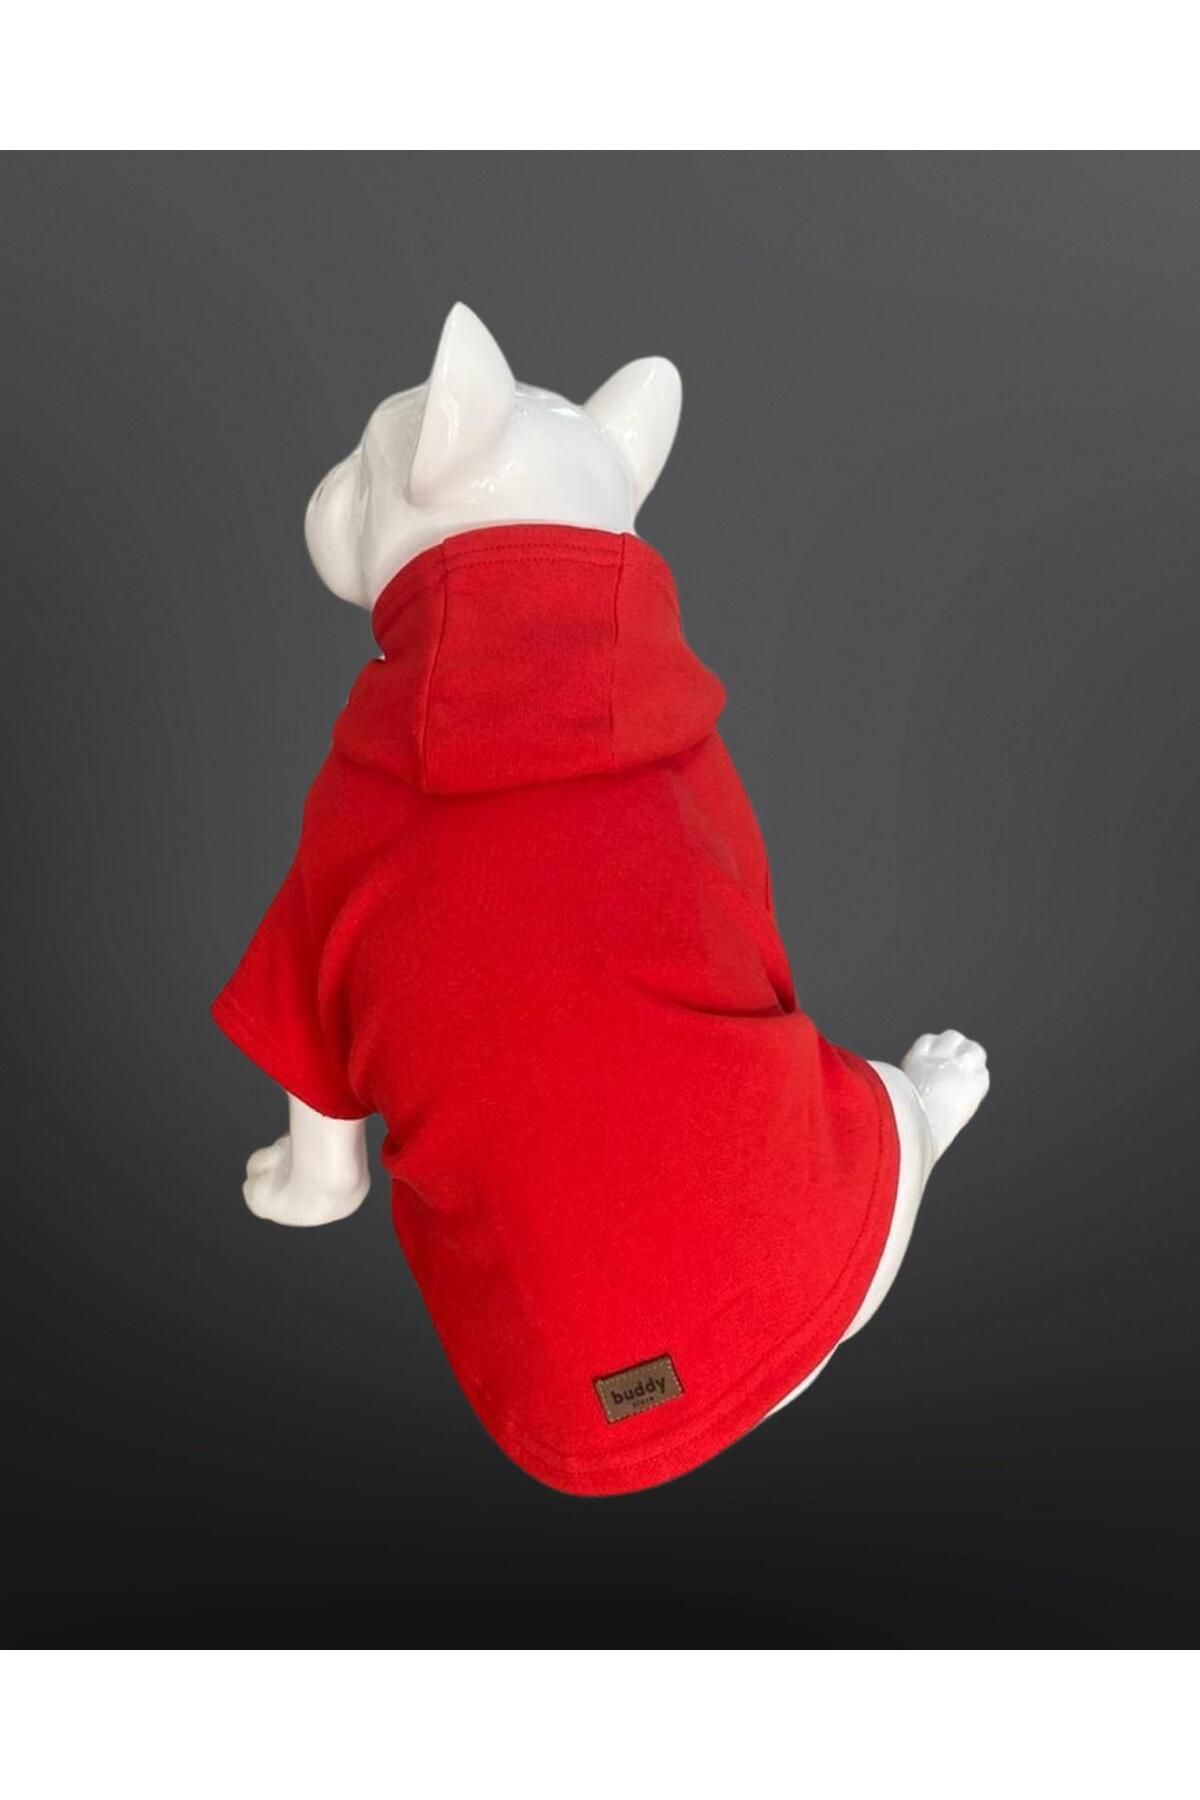 Buddy Store Kedi & Köpek Kıyafeti Sweatshirt - Baskısız Kırmızı Sweatshirt - L Beden